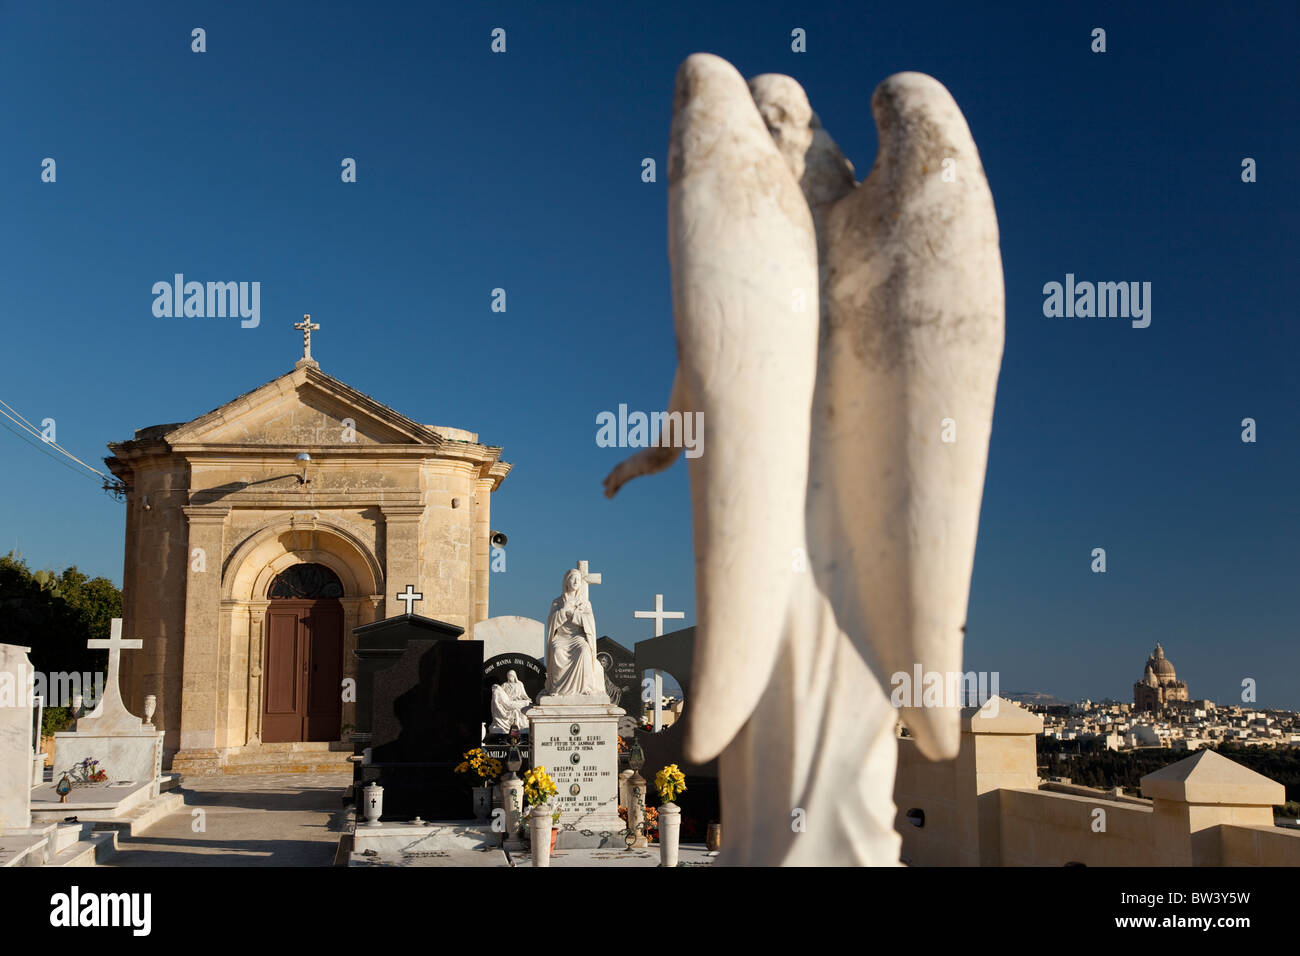 Trattenuta cappelle di pietra in contrasto con il barocco ornato di lapidi per ornare tombe nei cimiteri delle isole maltesi. Foto Stock